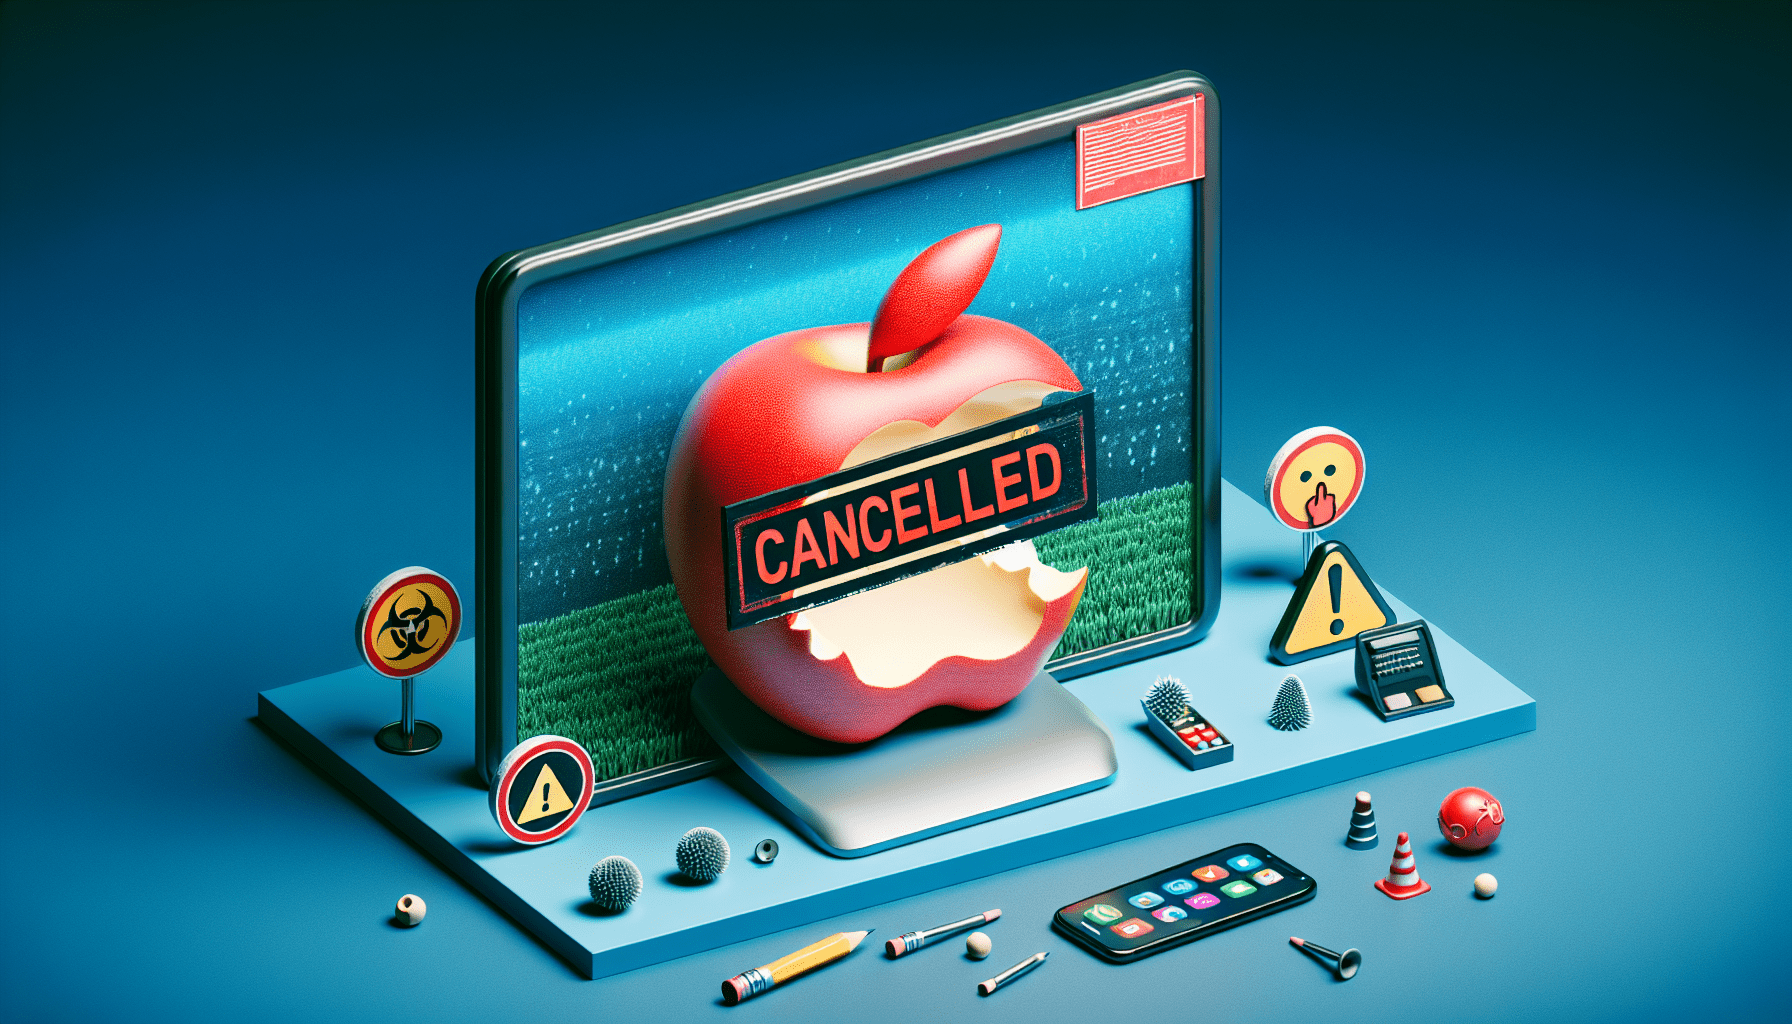 Jon Stewart potvrđuje da je Apple otkazao emisiju: Nisu željeli da govorim stvari koje bi me mogle dovesti u nevolju